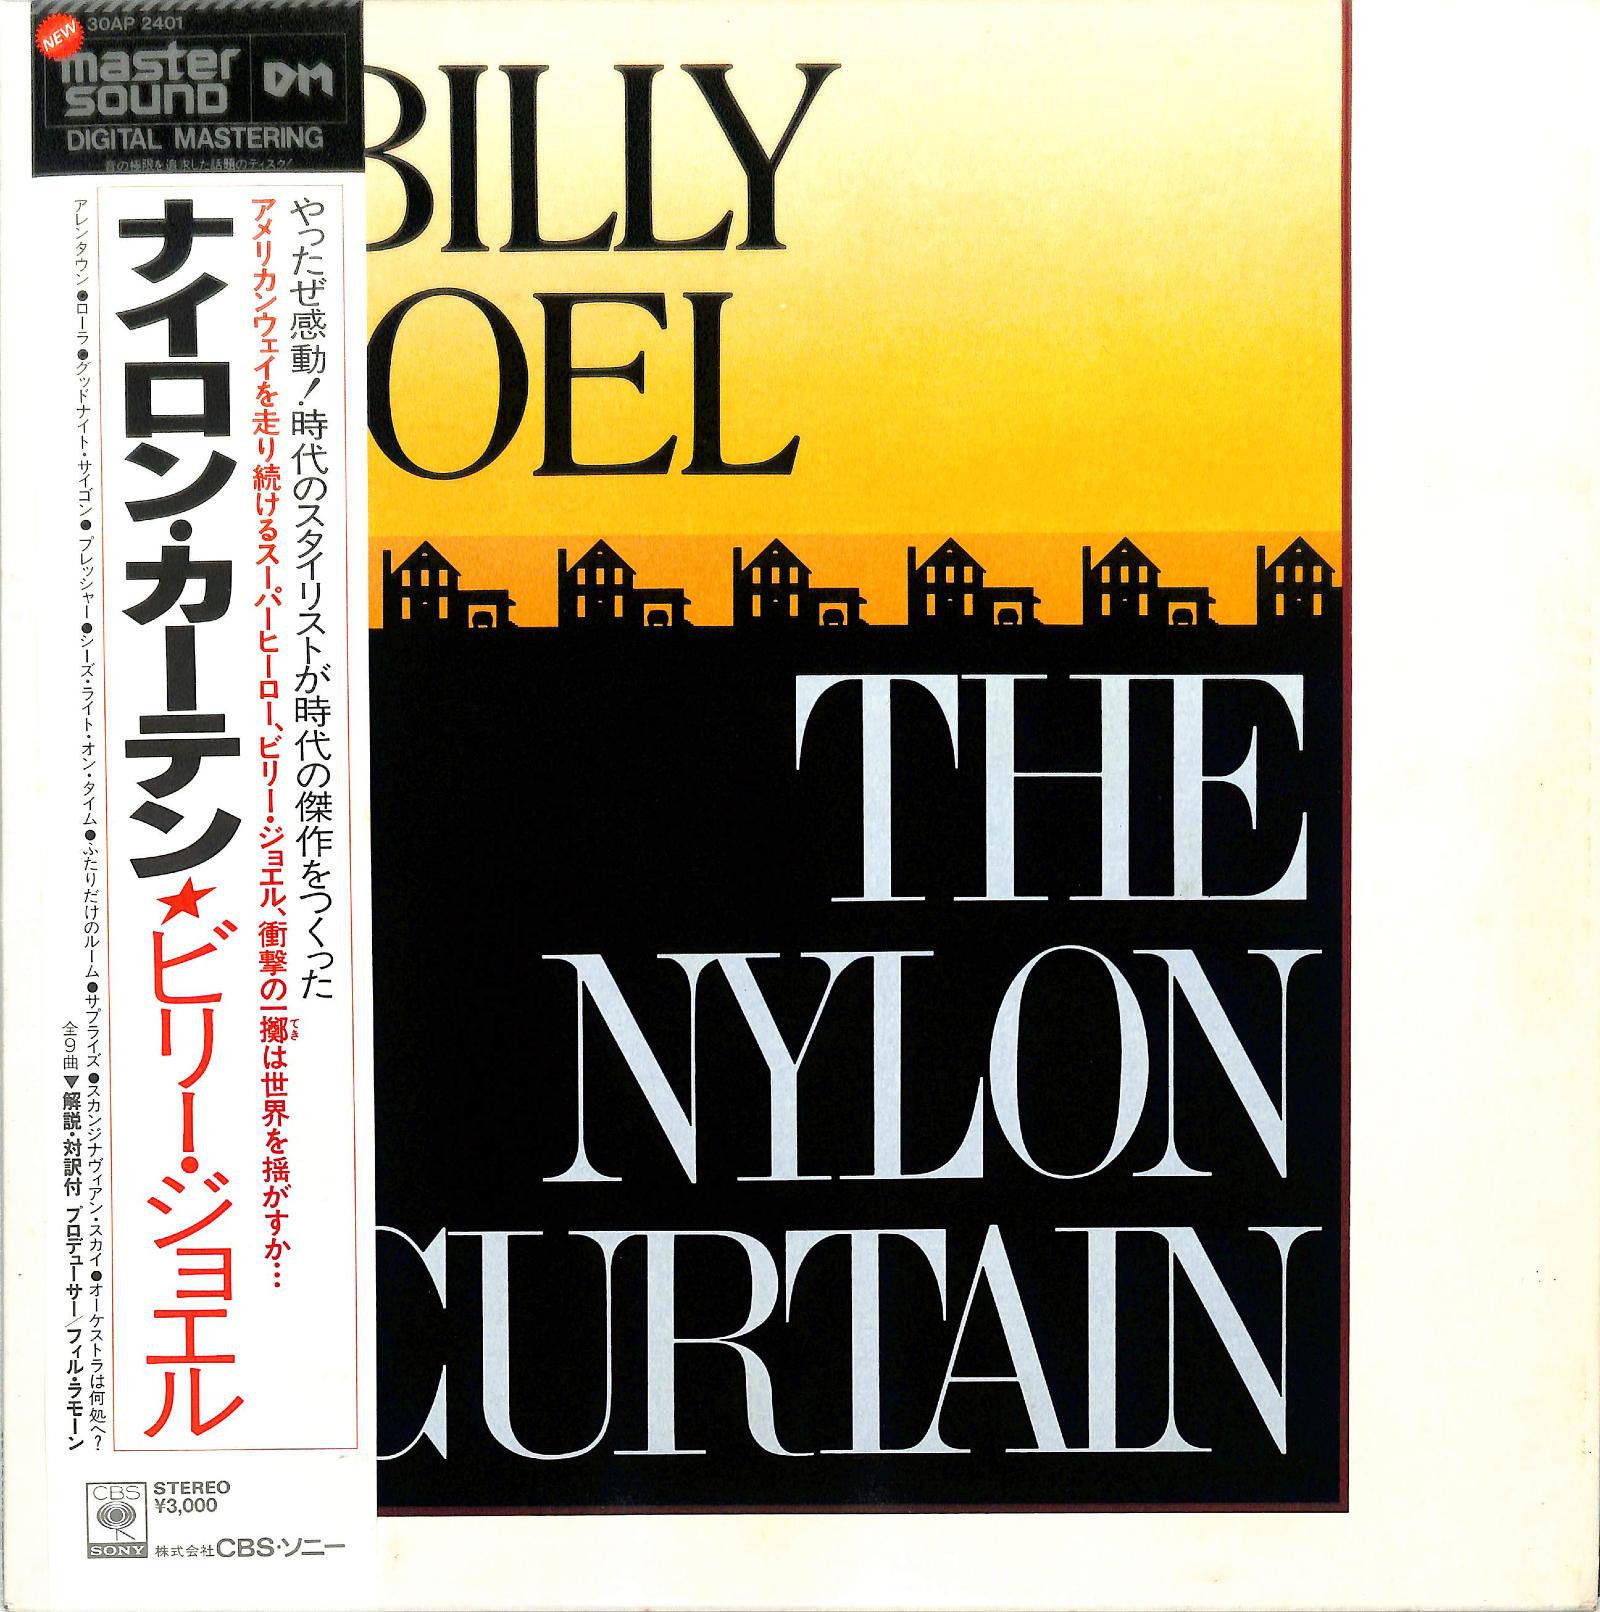 BILLY JOEL - The Nylon Curtain